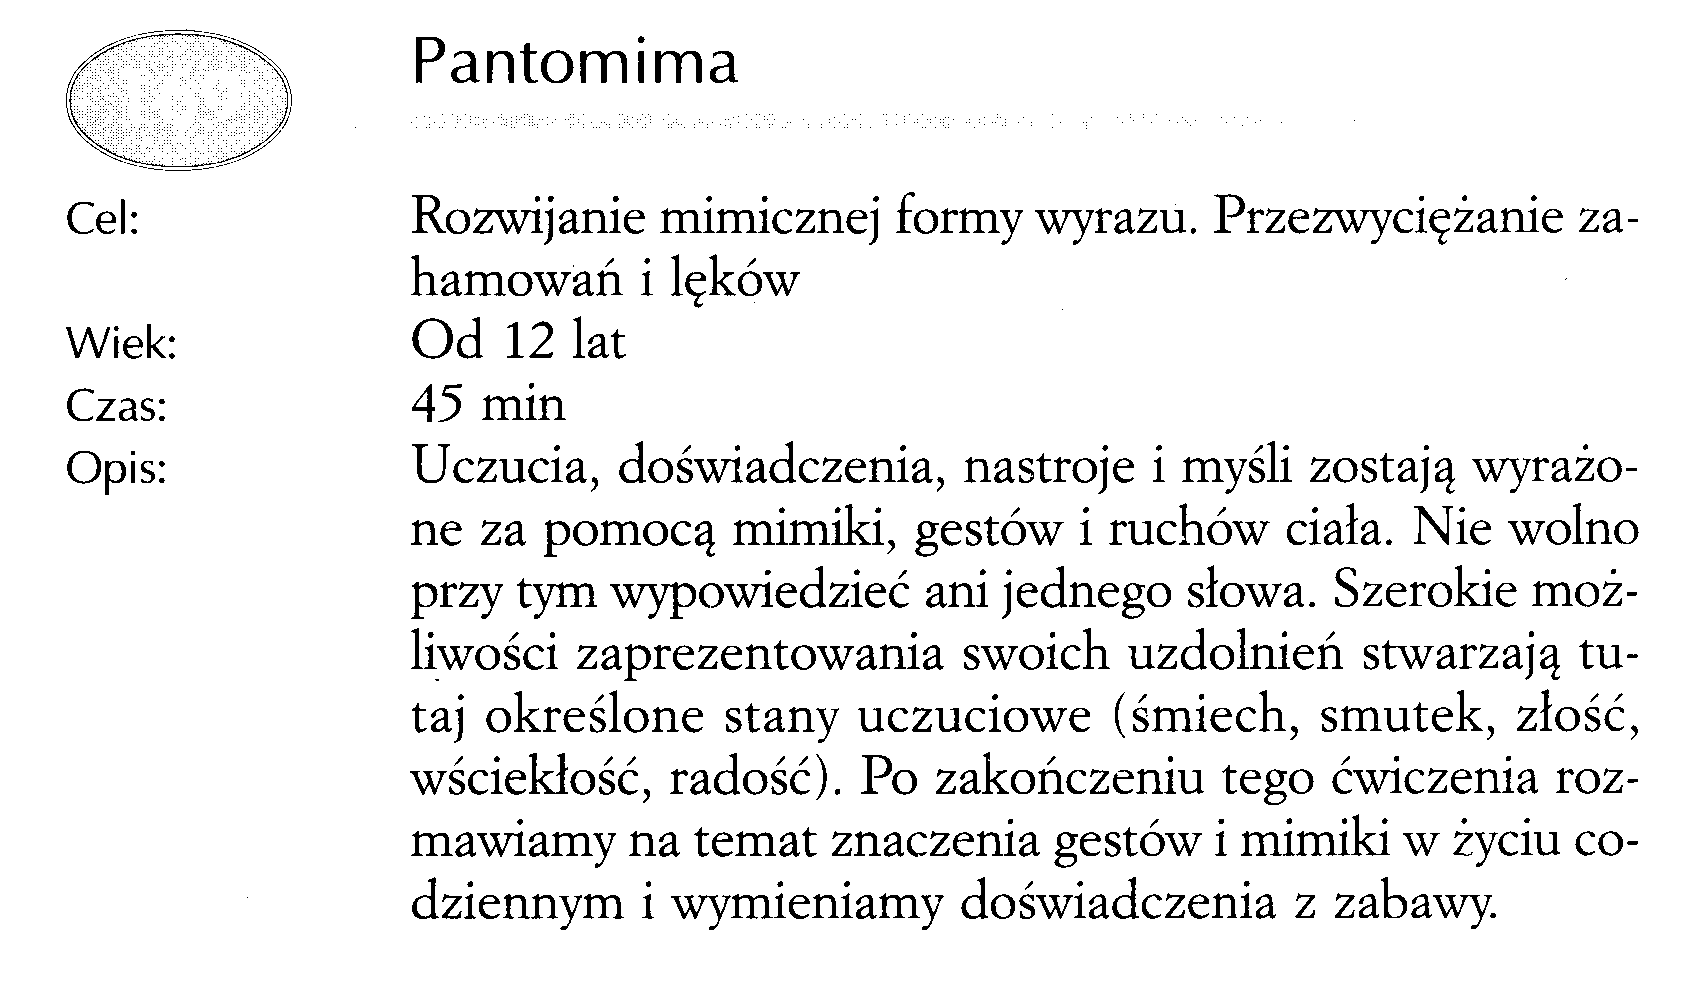 ZABAWY 200 - PANTONIMA.bmp